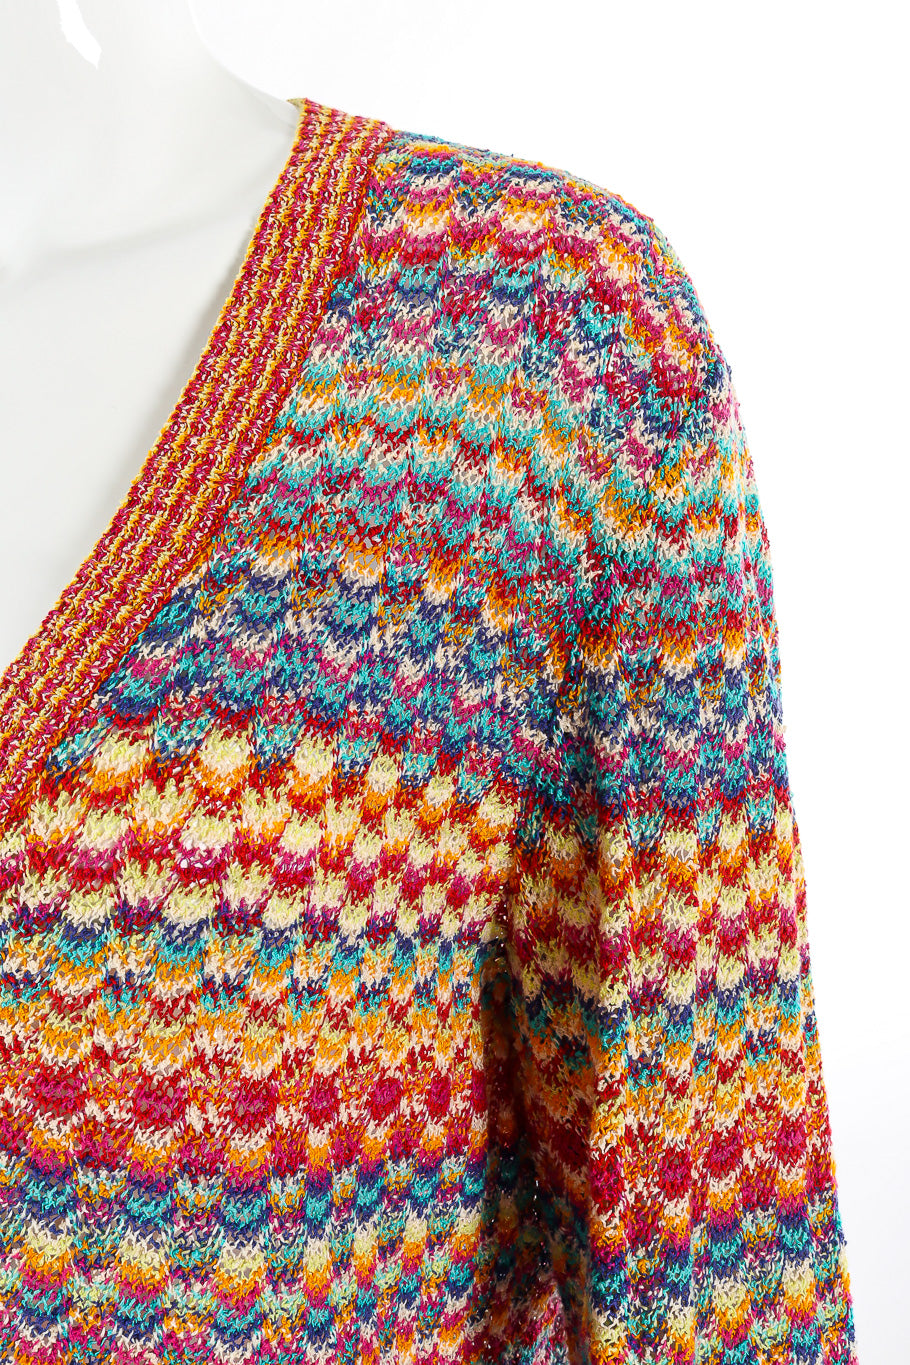 Scallop stripe classic knit 2 piece set by Missoni mannequin shoulder detail close @recessla